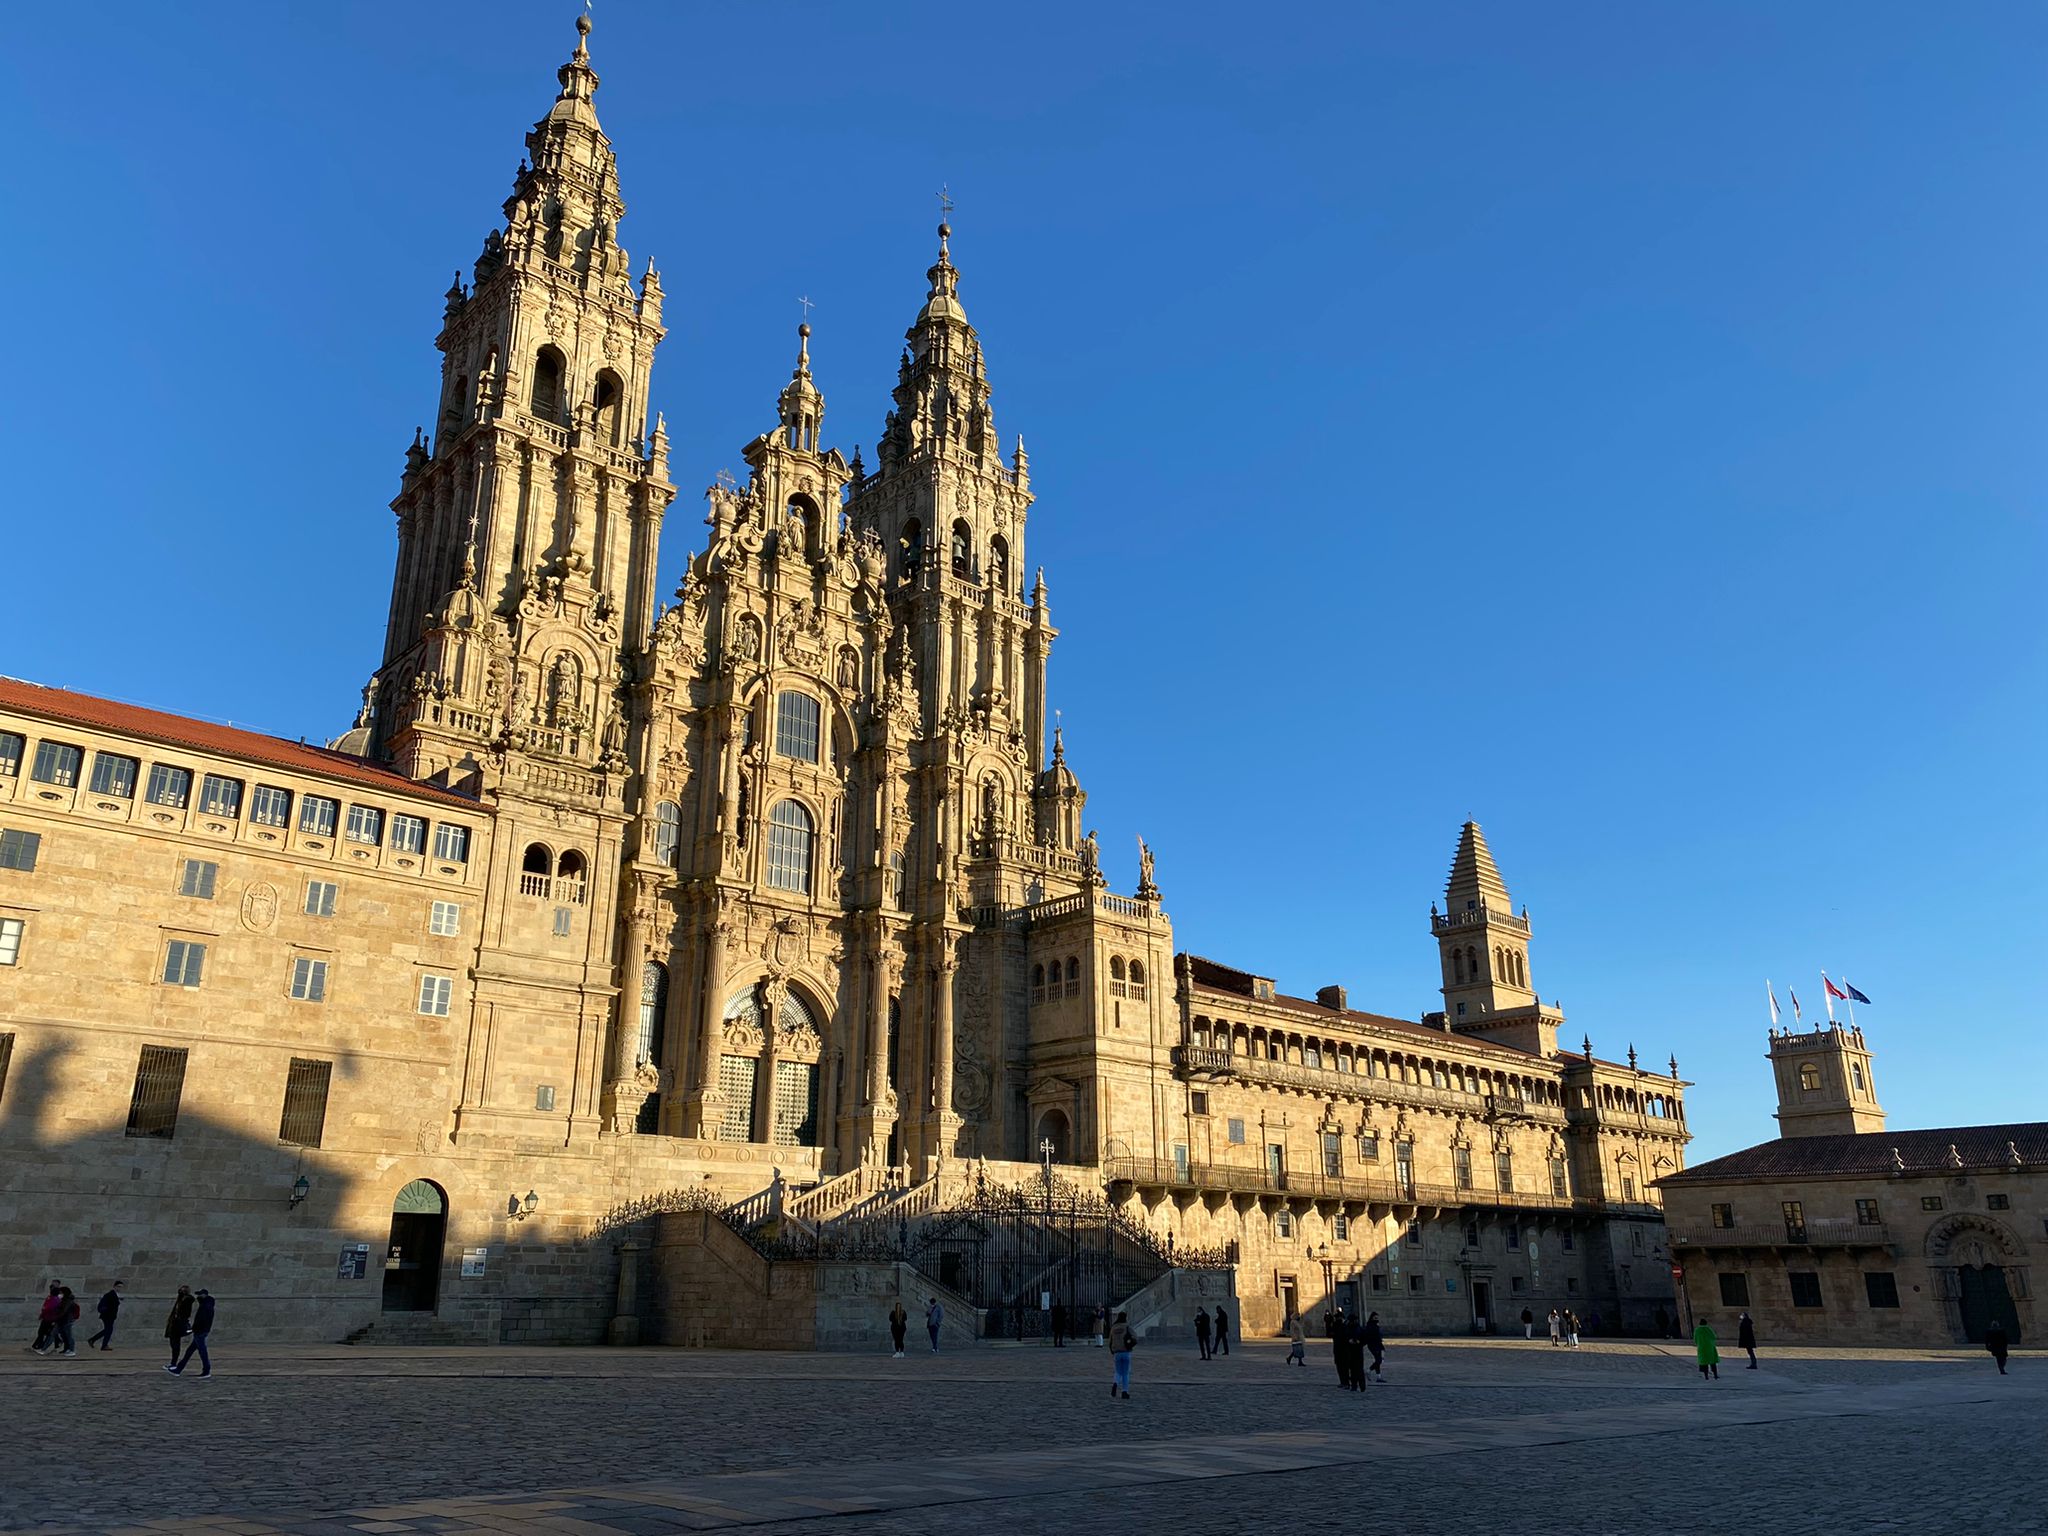 Day 7: Santiago de Compostela